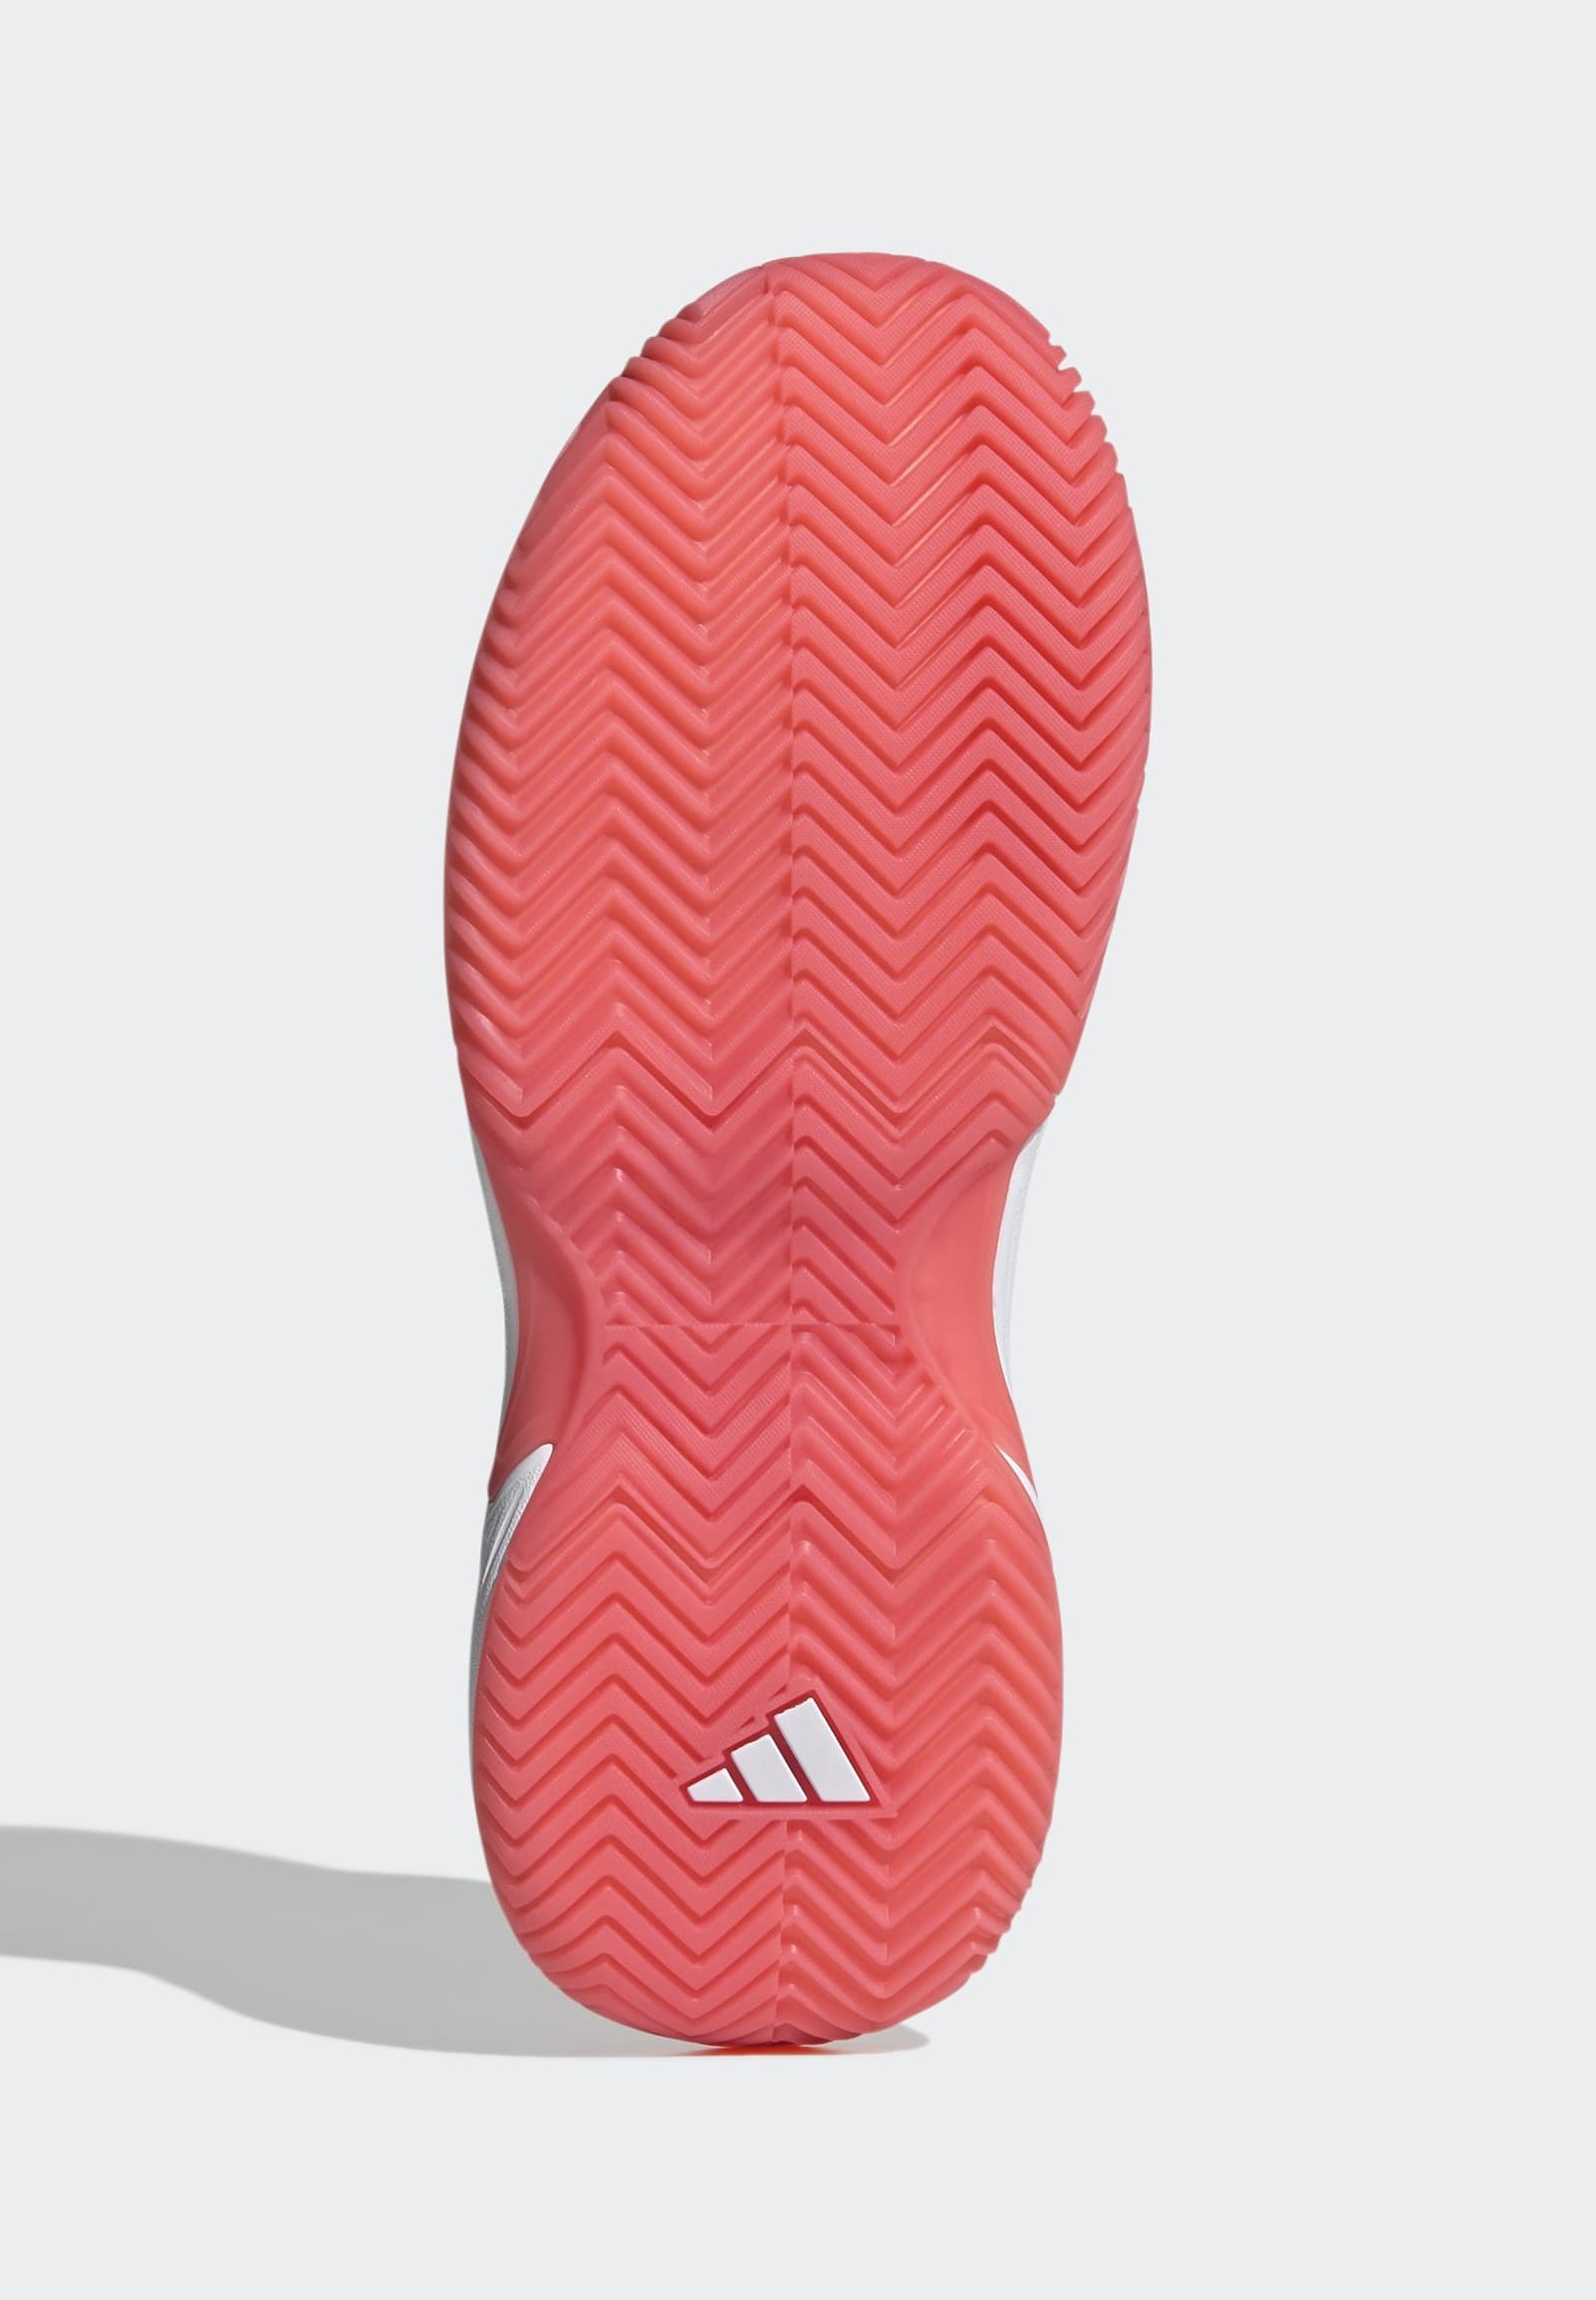 Фото № 5 с приближением к товару «‎Adidas Gamecourt»